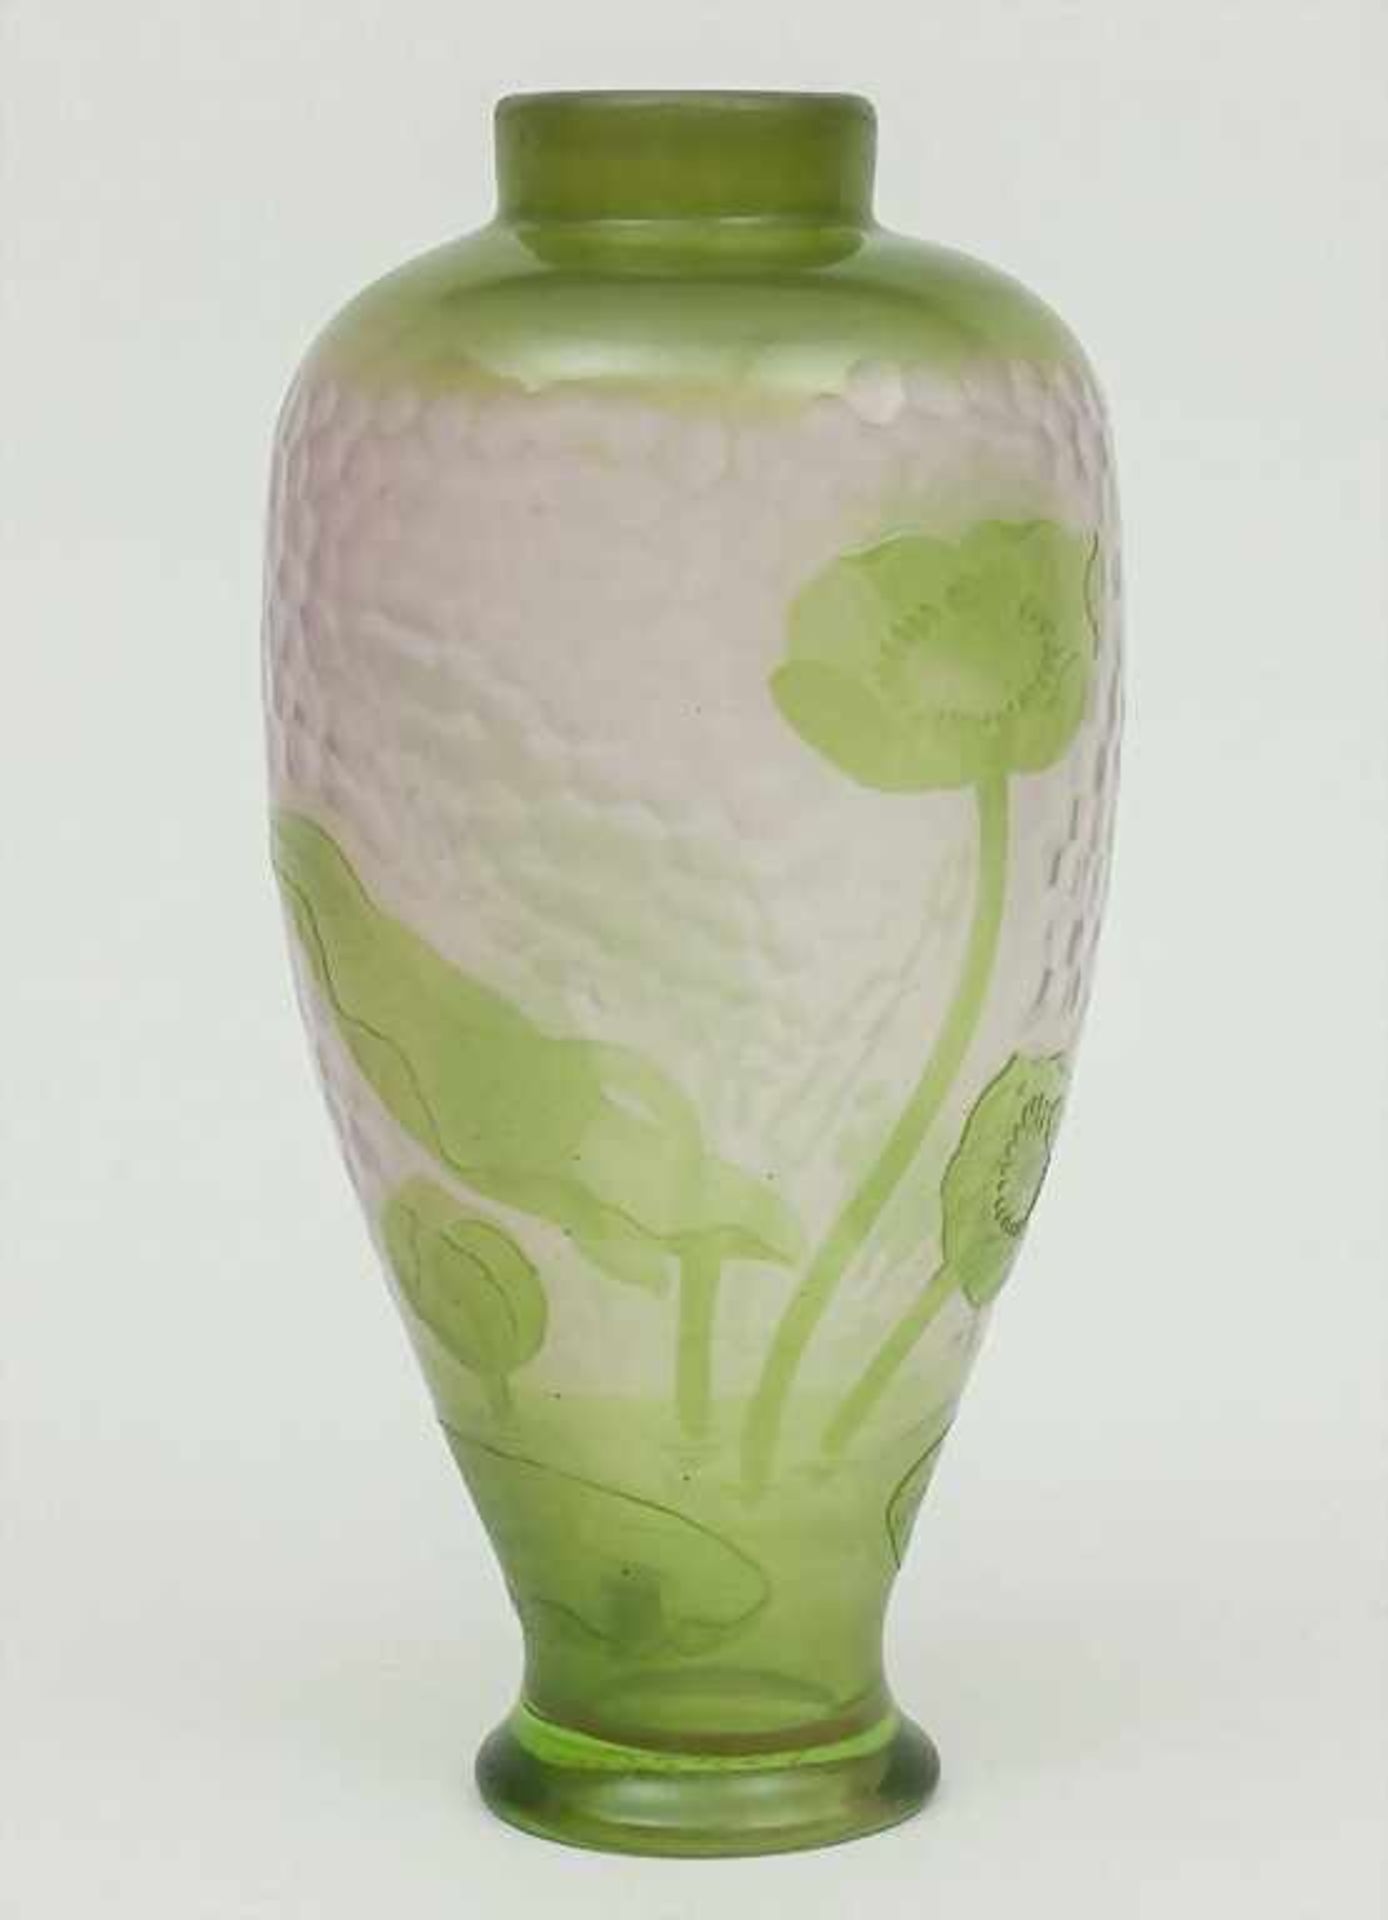 Jugendstil-Vase, Daum Frères, Nancy, um 1900durchsichtiges Glas, zartgrün überfangen, umlaufend